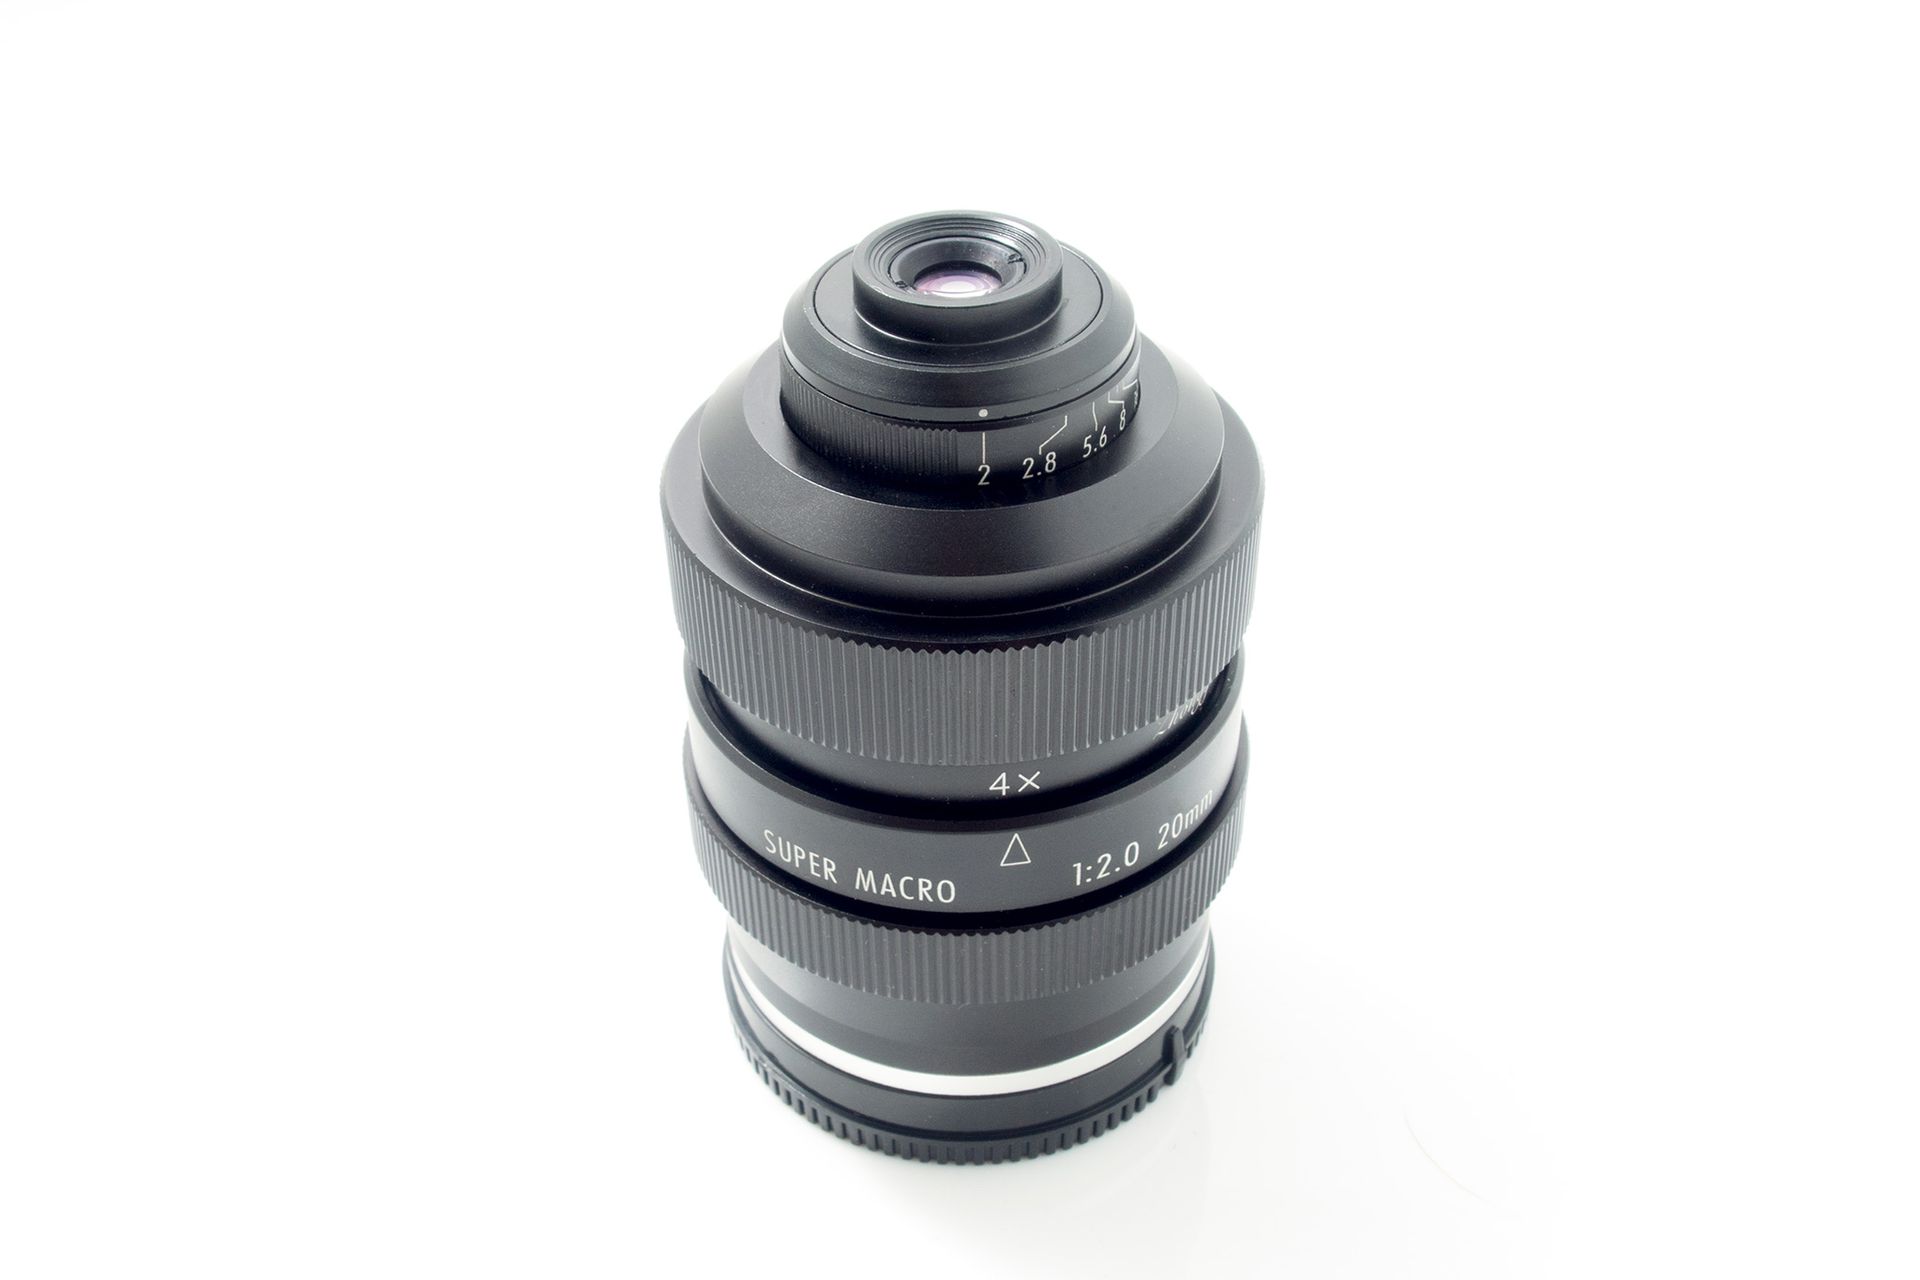 Zhongyi Mitakon 20mm f/2.0 4.5X Super Macro Lens